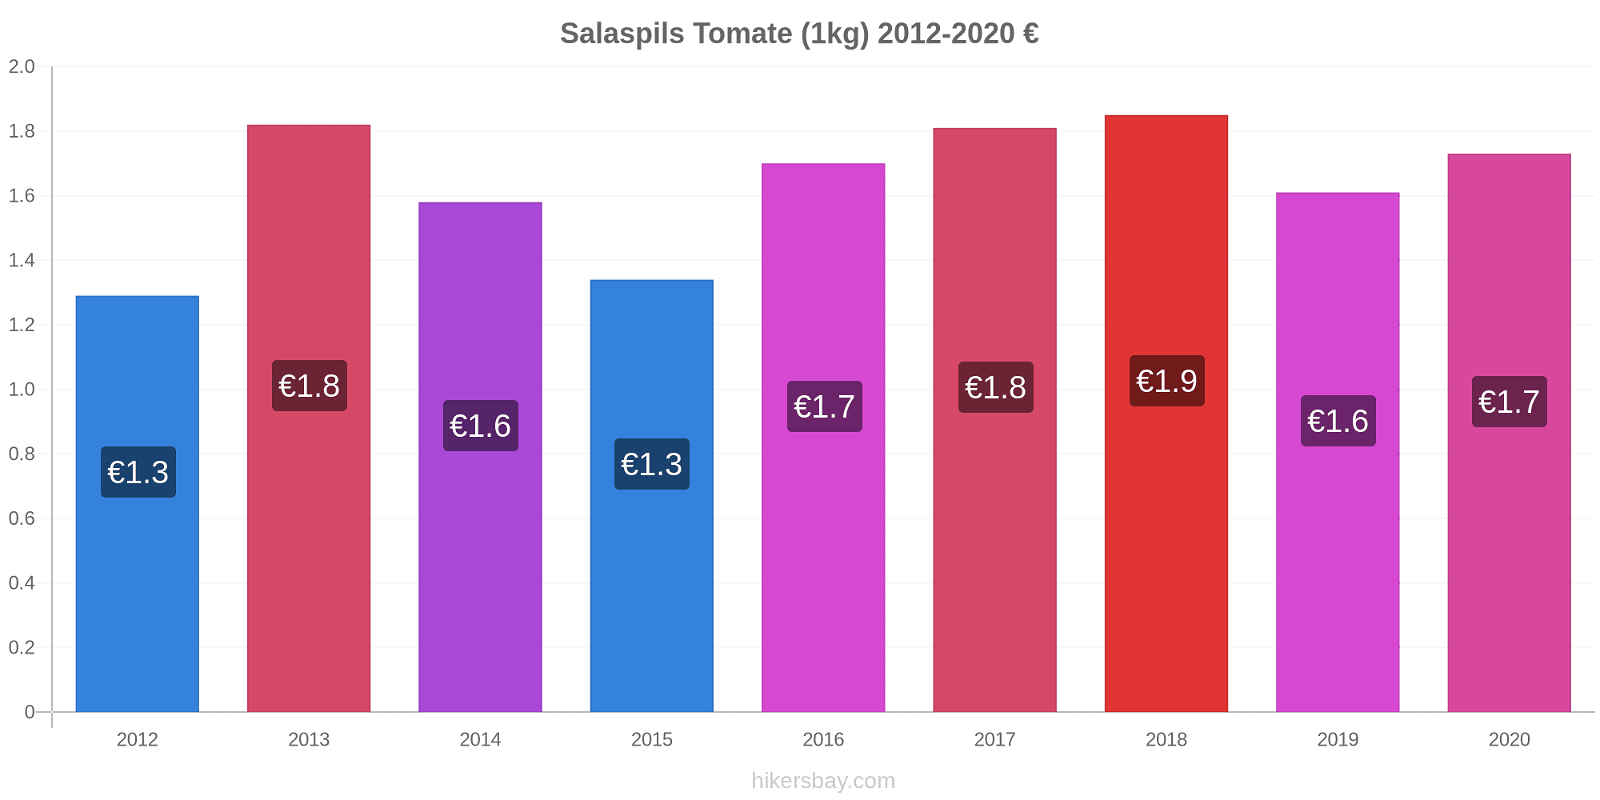 Salaspils variação de preço Tomate (1kg) hikersbay.com